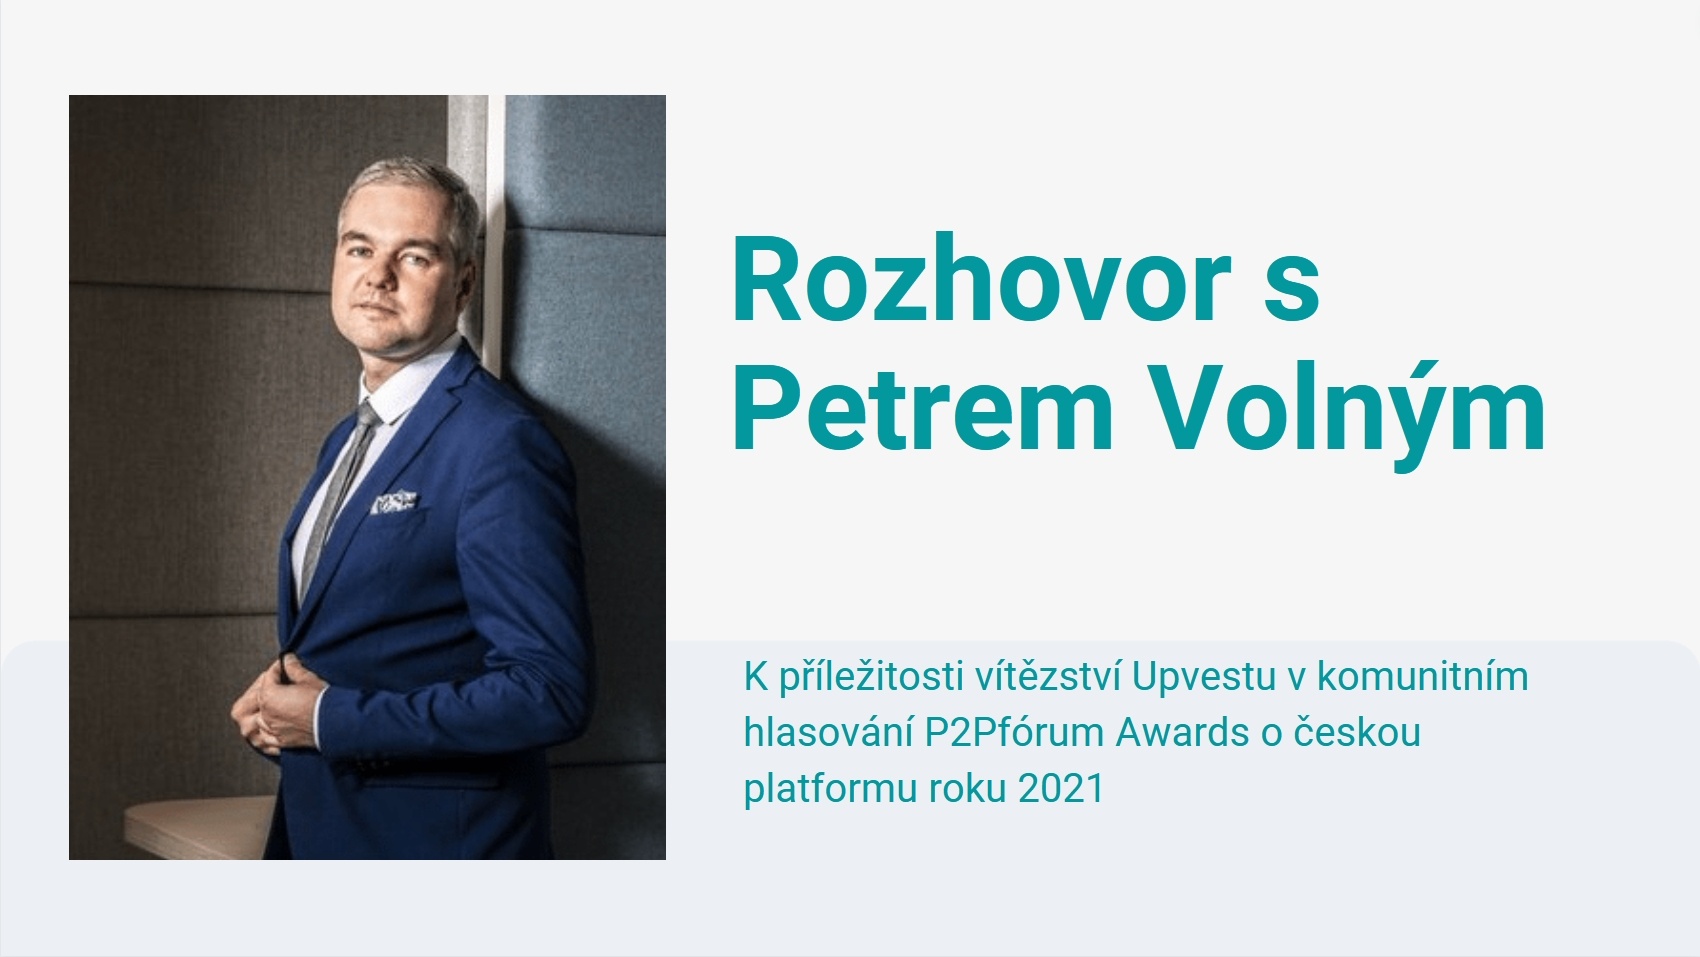 Rozhovor s Petrem Volným z Upvestu, vítězem české platformy roku 2021